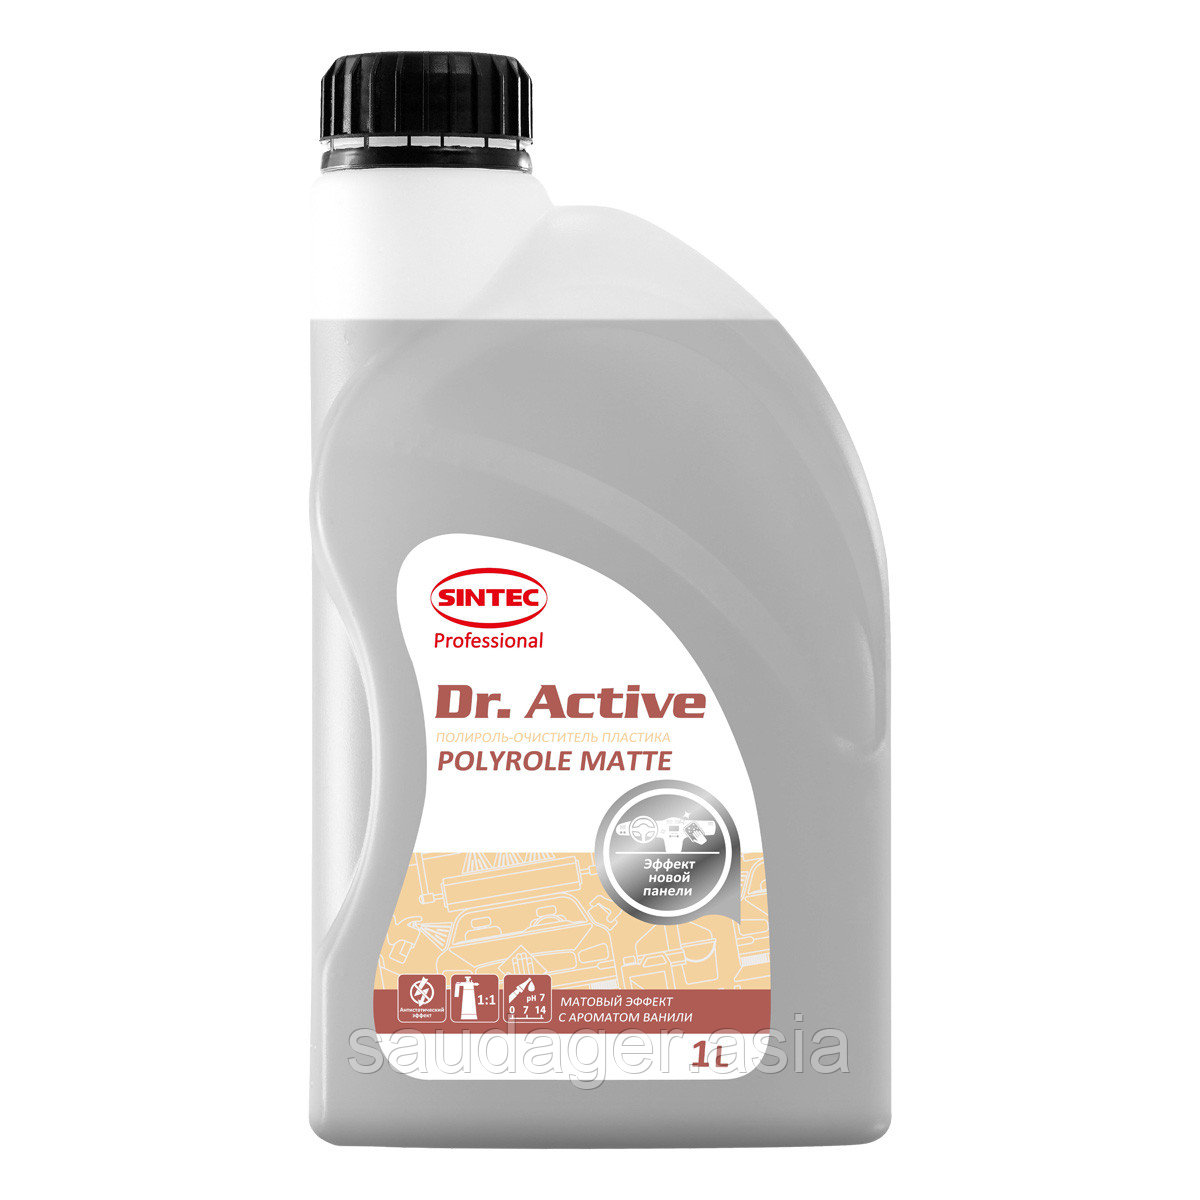 Sintec Dr. Active Полироль-очиститель пластика "Polyrole Matte" ваниль (1 кг)